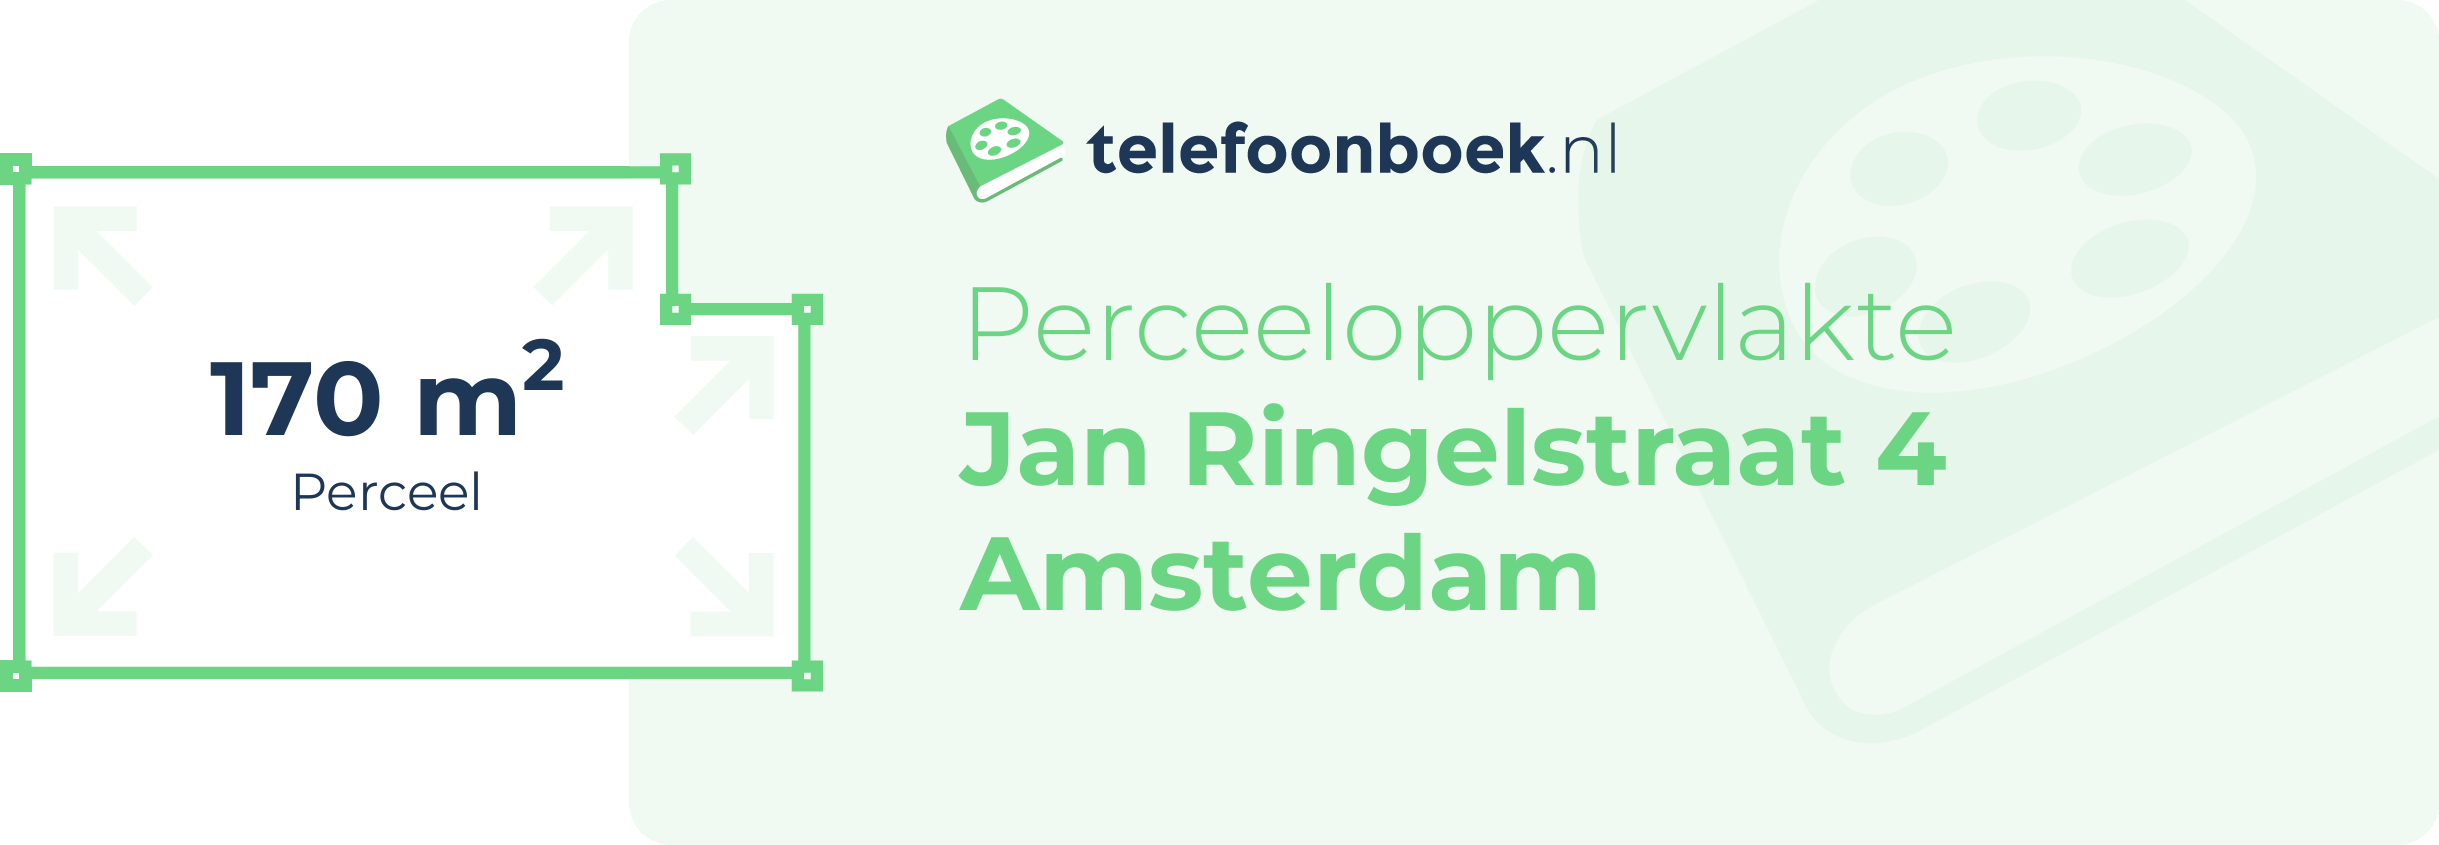 Perceeloppervlakte Jan Ringelstraat 4 Amsterdam